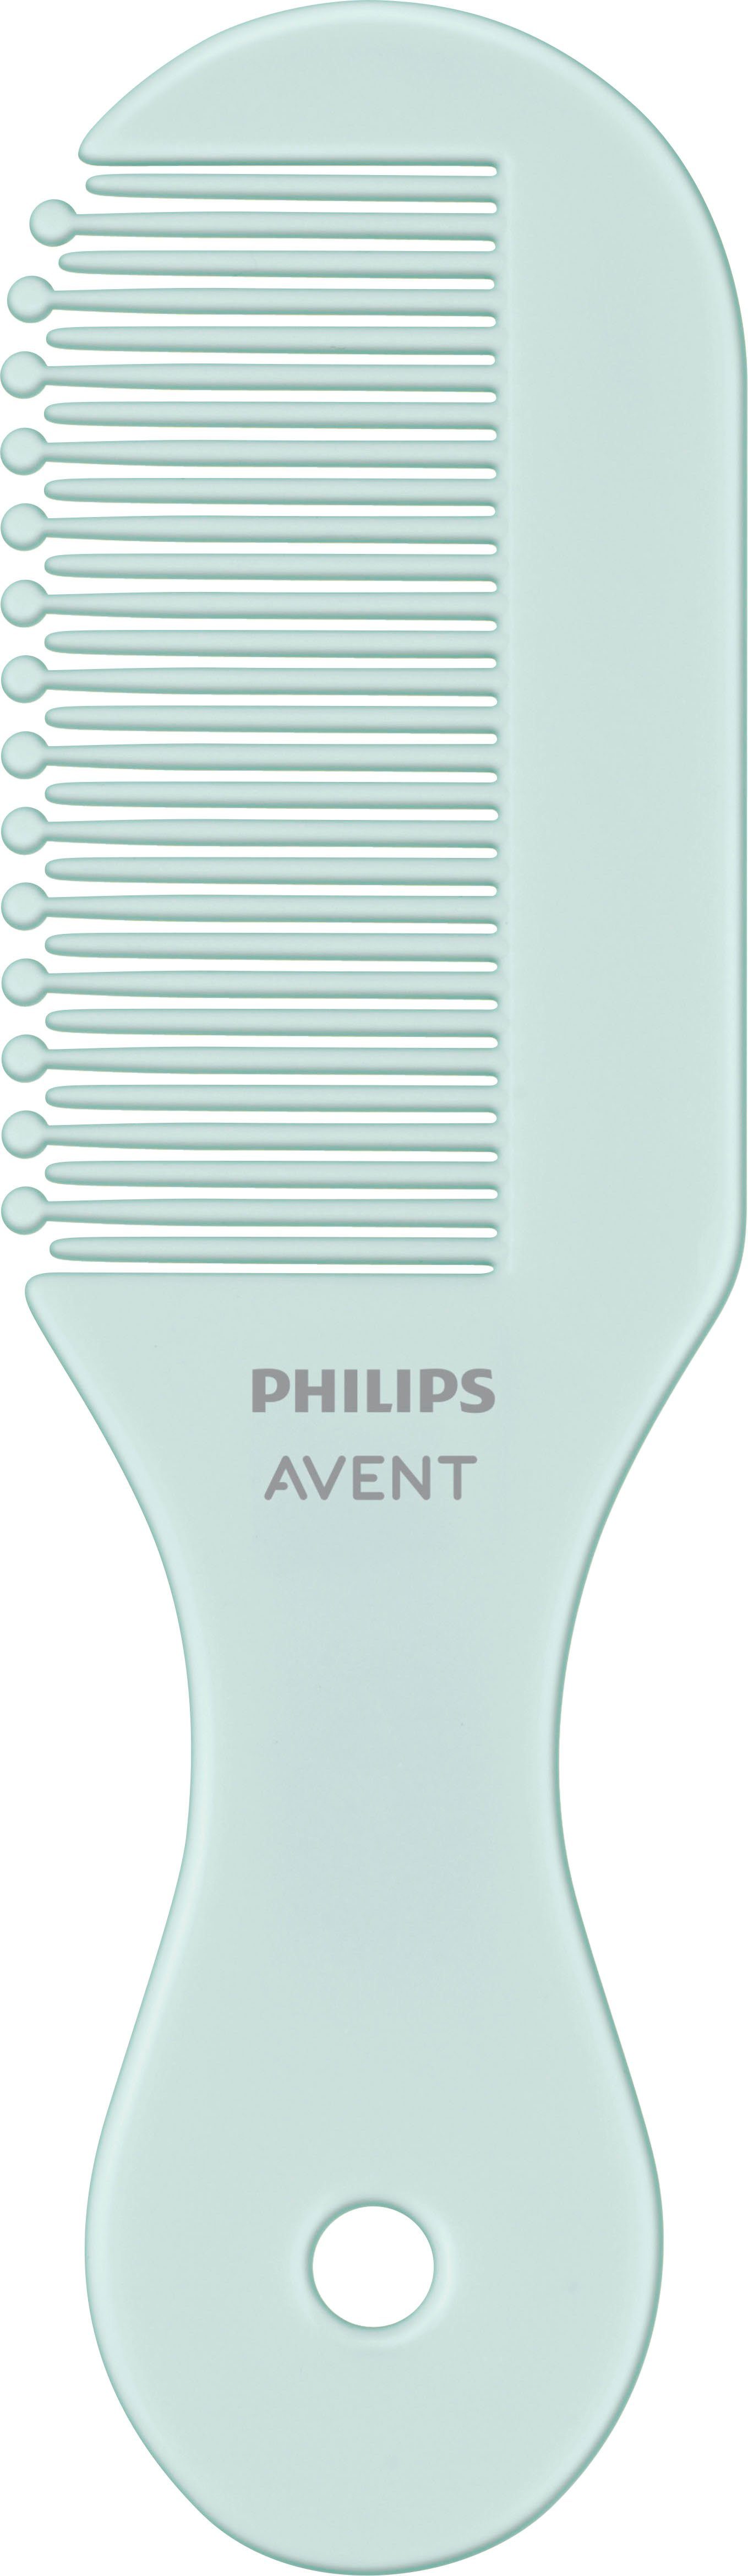 Philips AVENT Babypflege-Set SCH401/00, mit für wichtigen Babypflege die allen